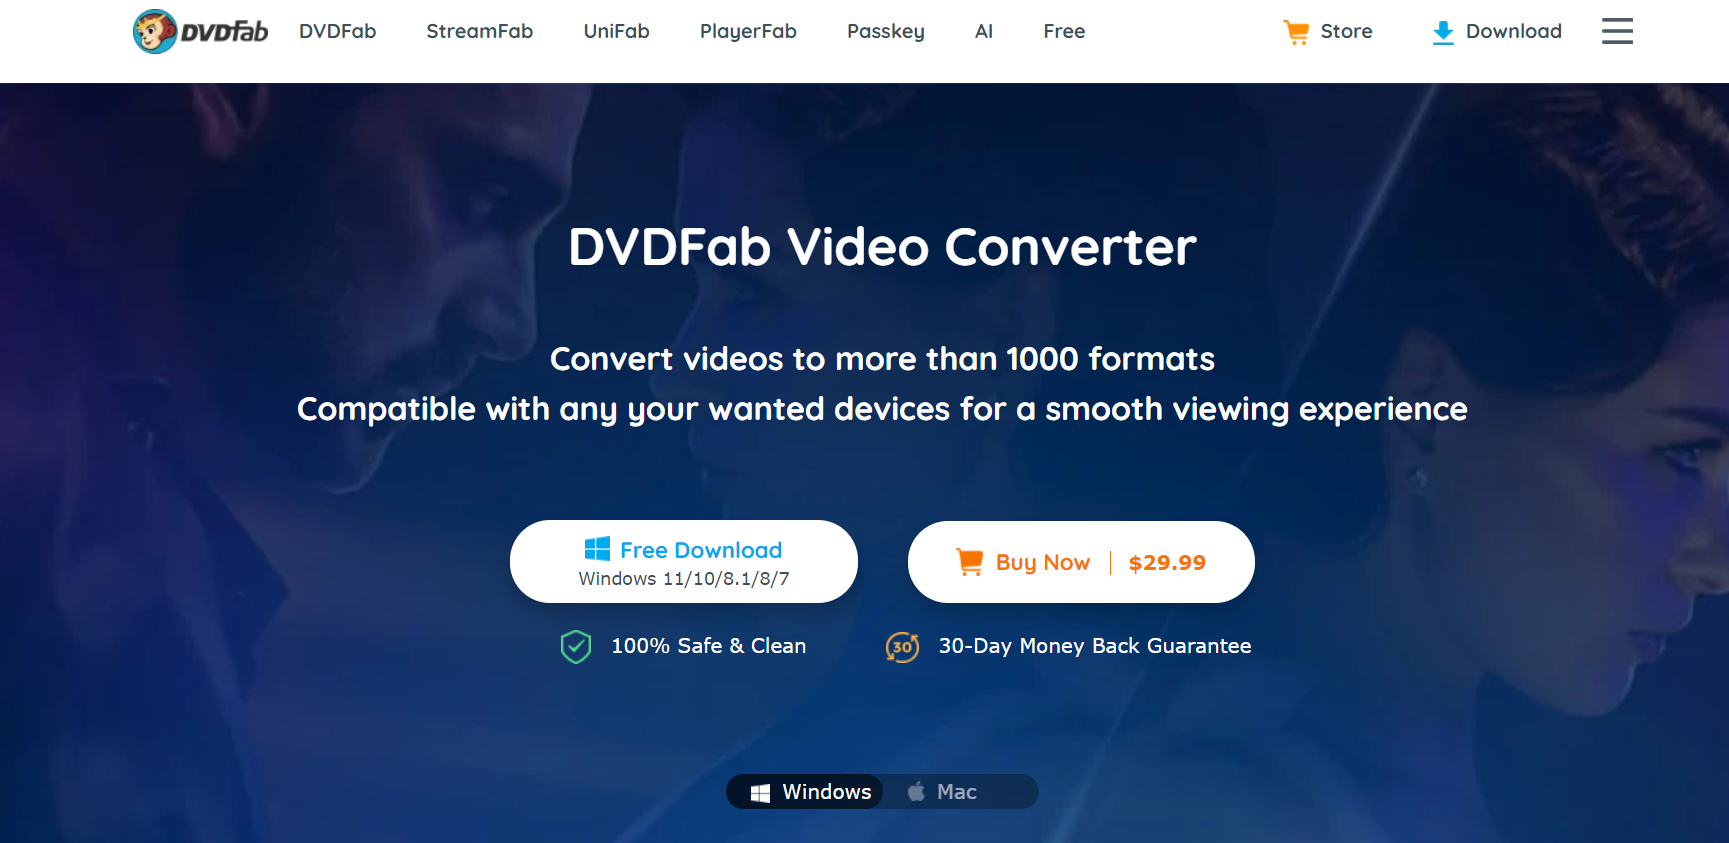 dvd fab video converter